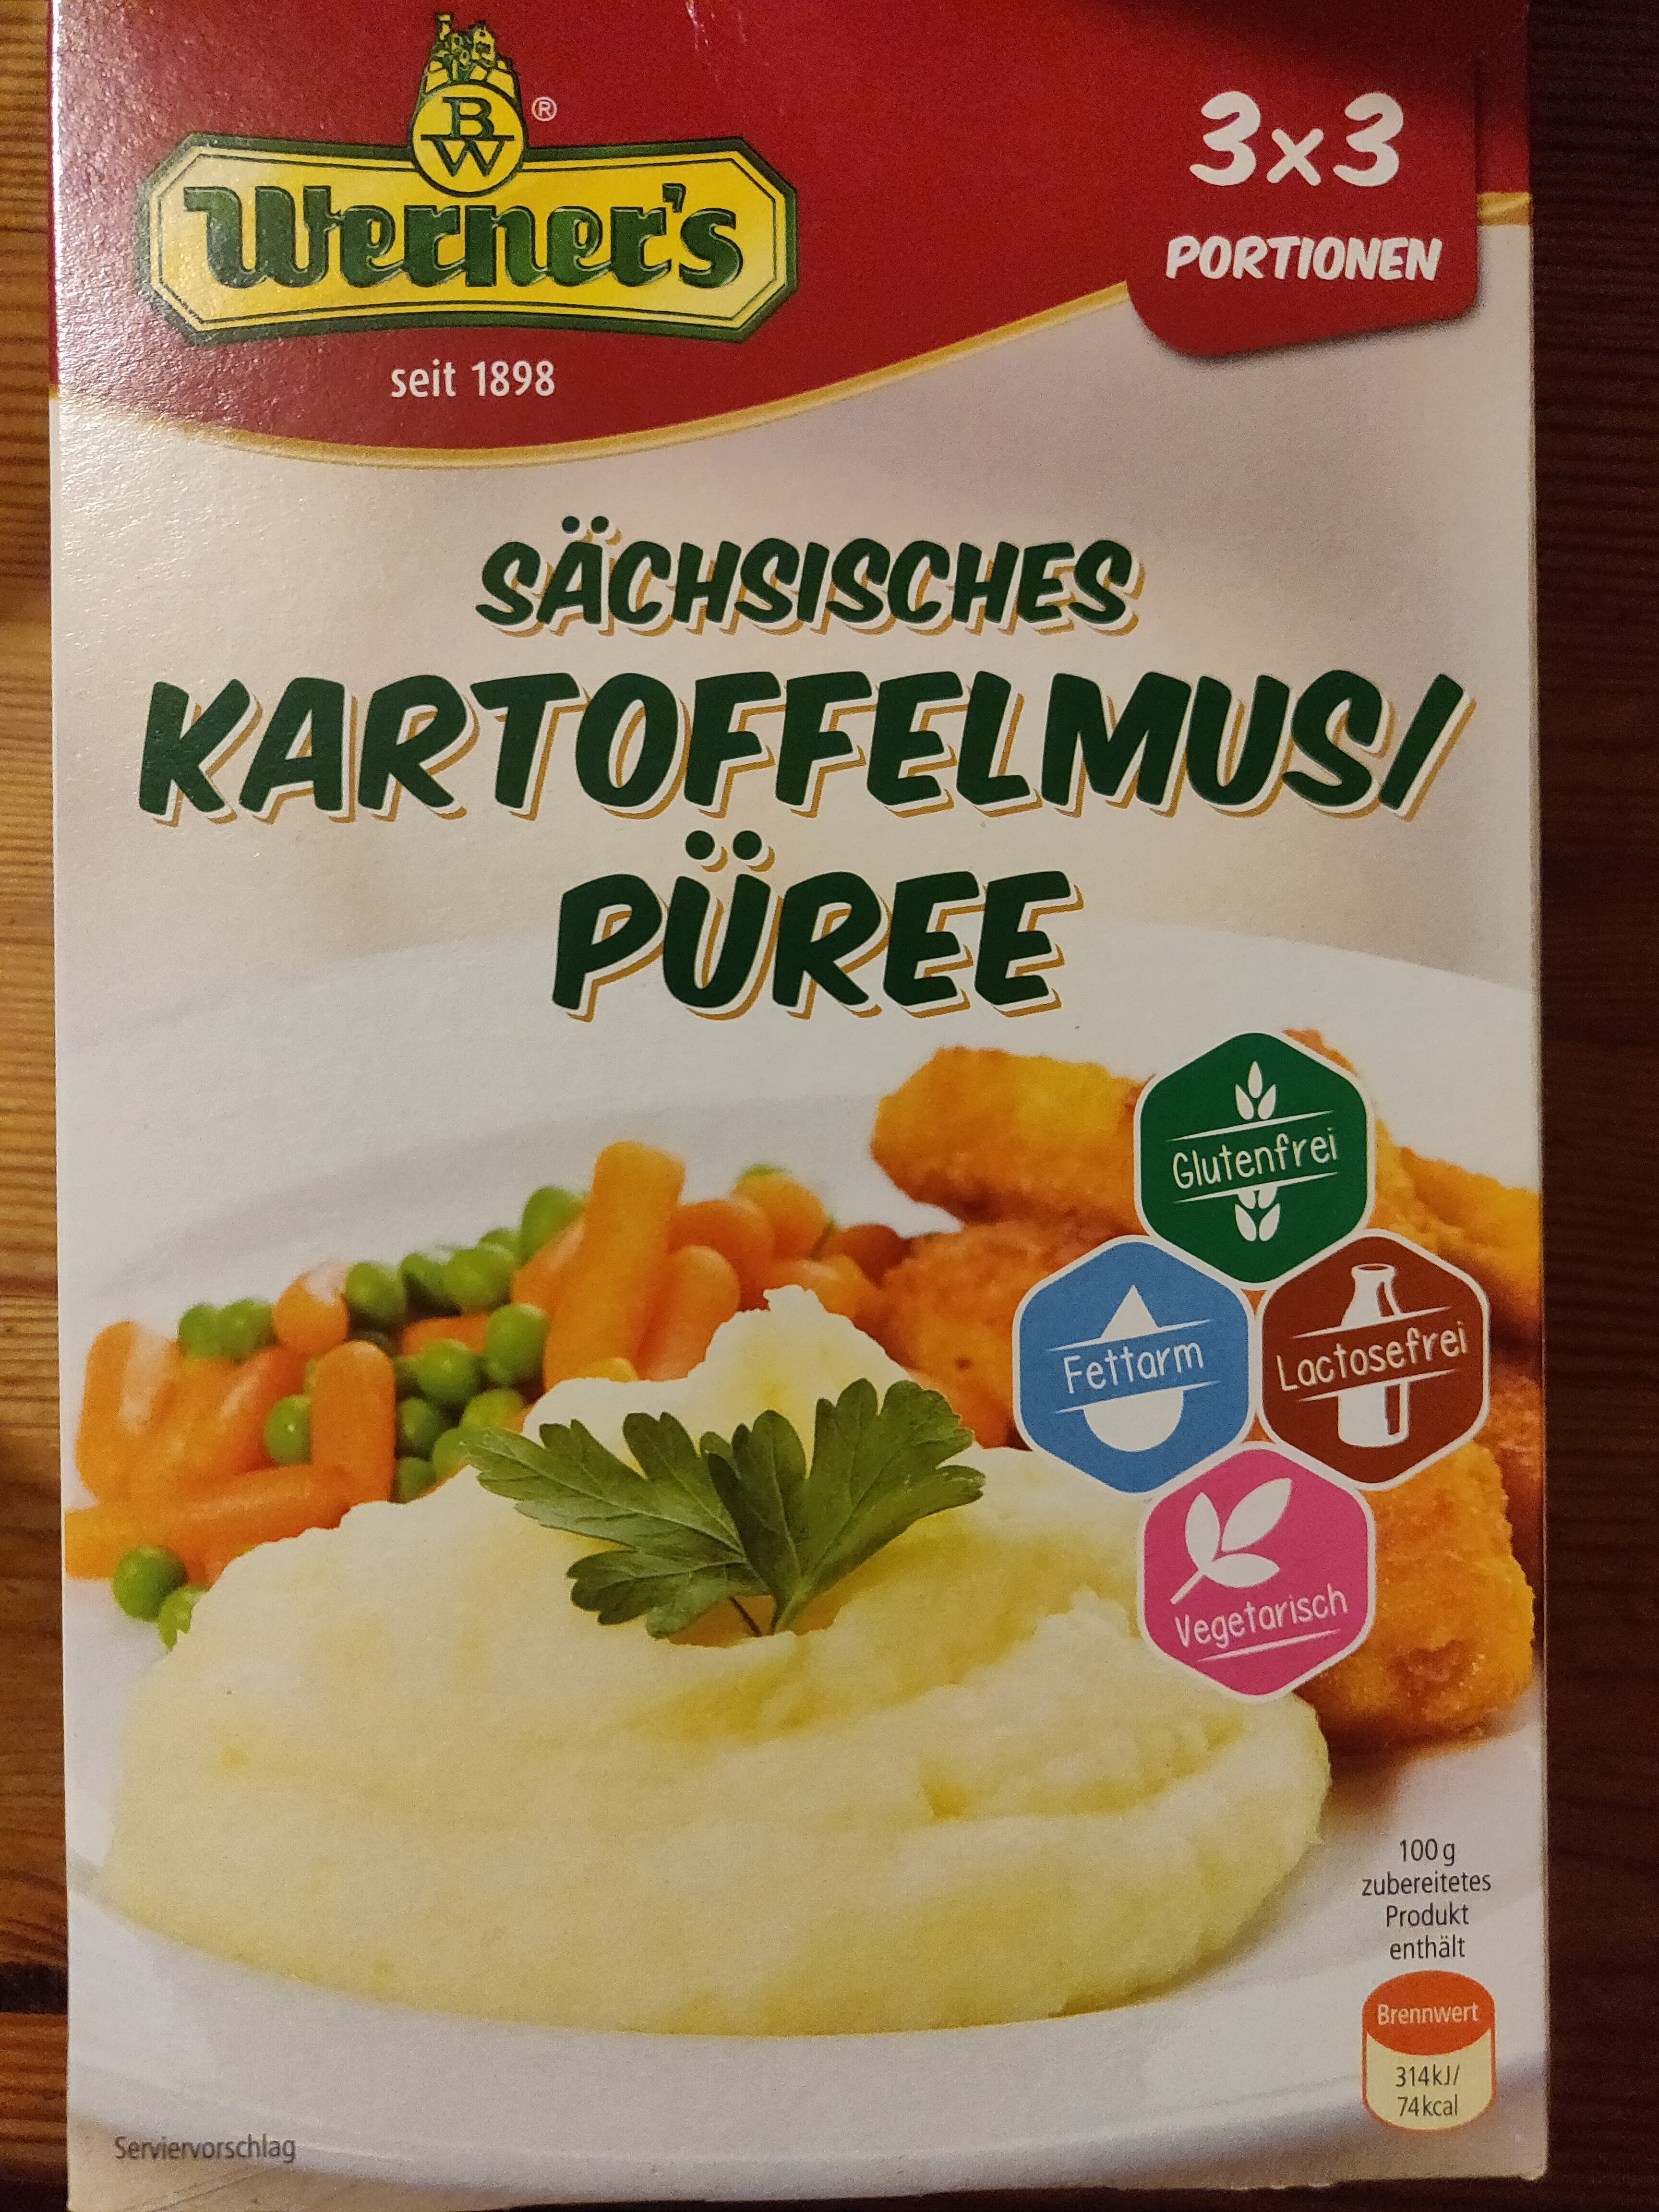 Sächsische Kartoffelmus/Püree - Produkt